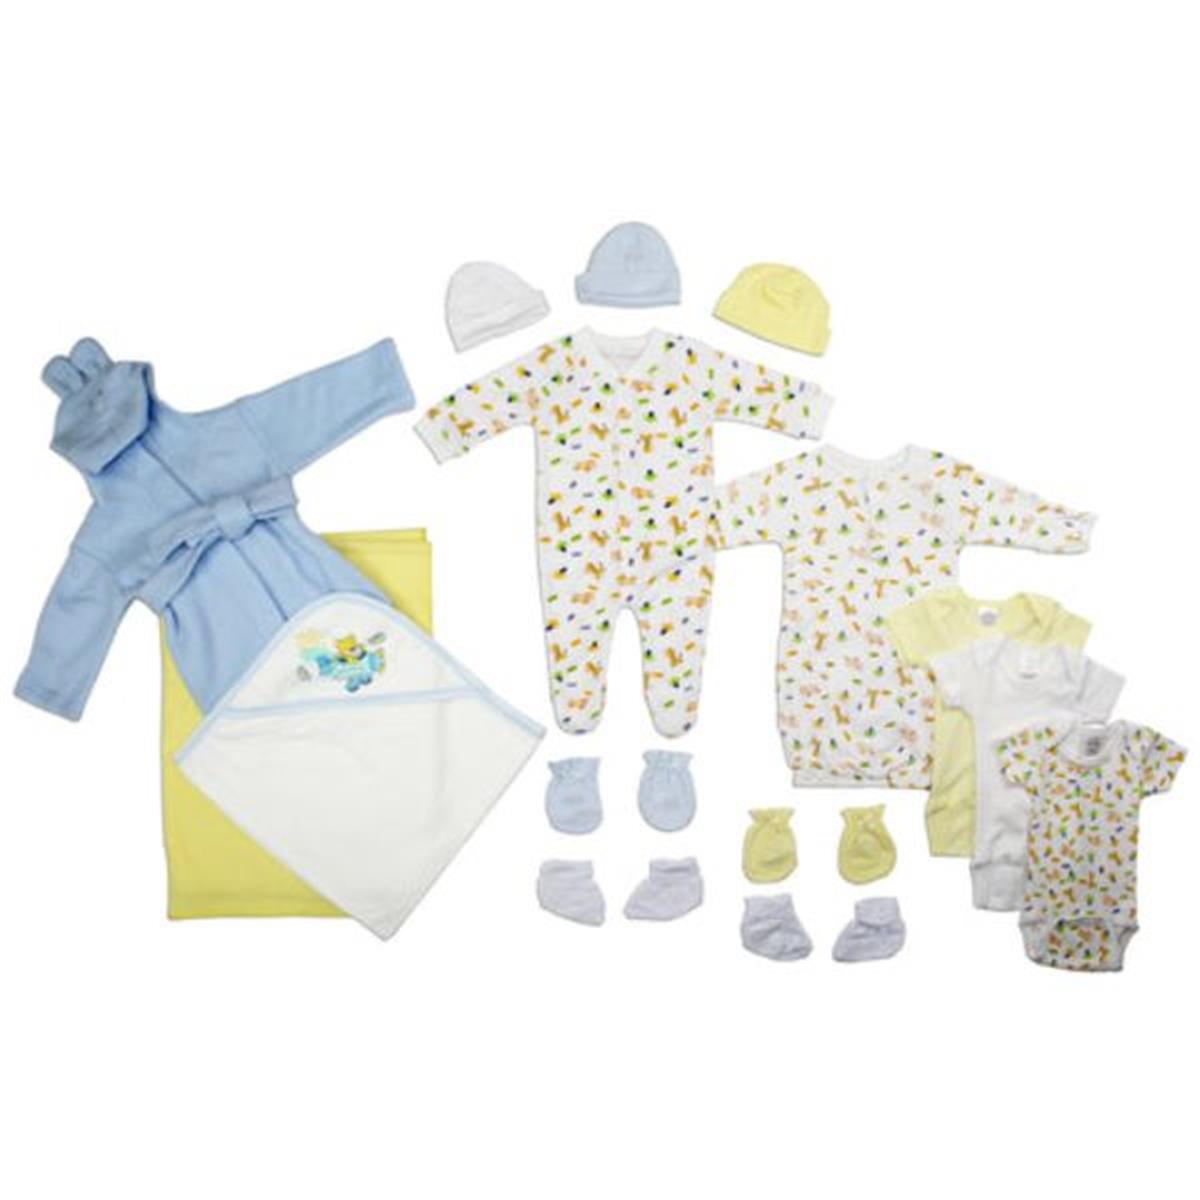 Bambini LS-0114 Newborn Baby Boys Layette Baby Shower Gift Set&#44; White & Blue - Newborn